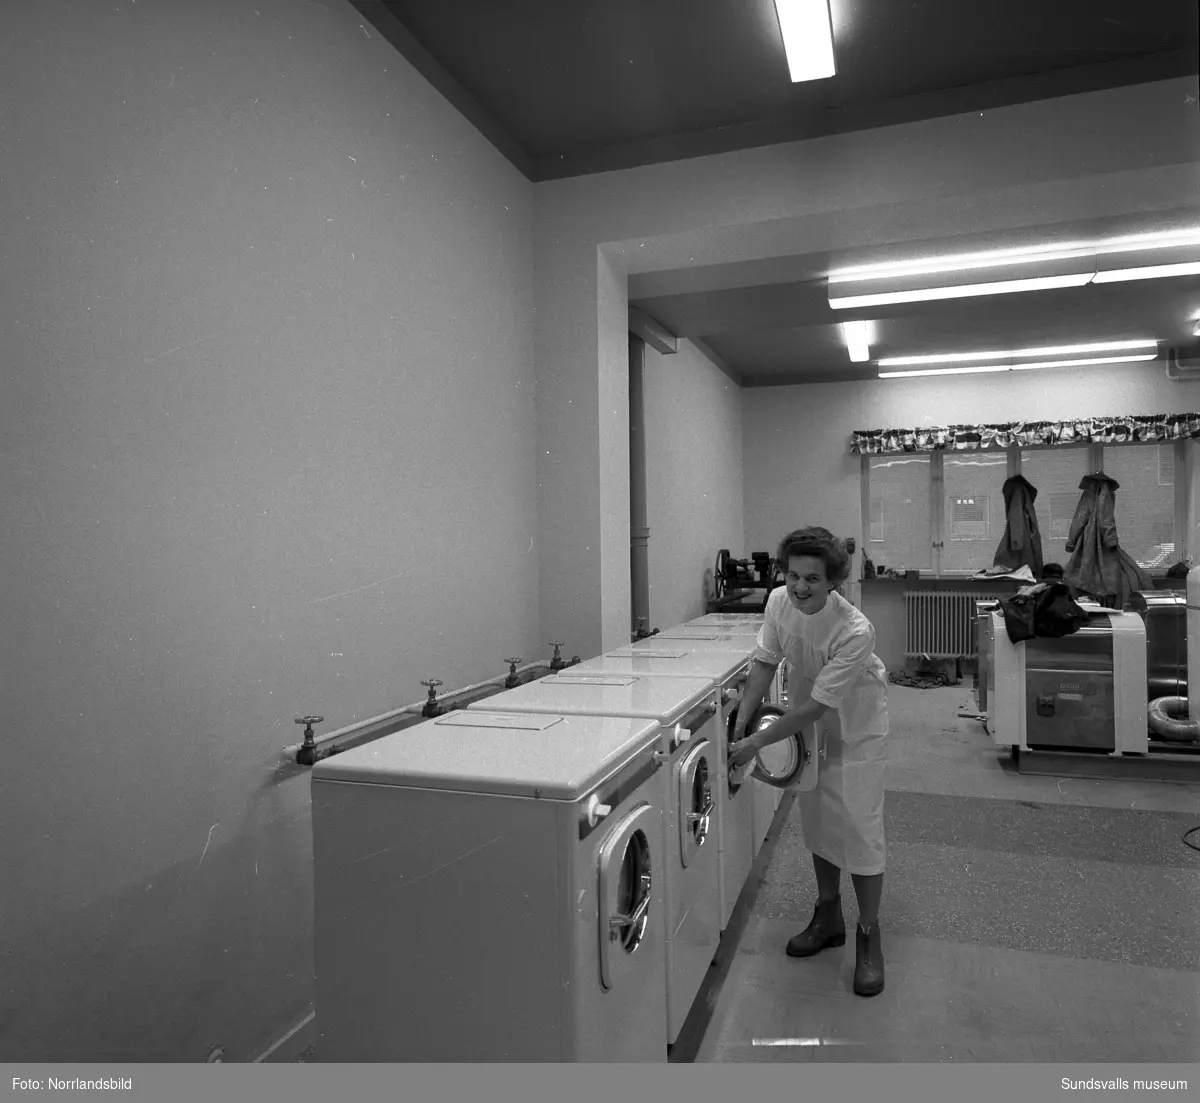 I november 1959 öppnade Norrlands första Tvättbar på Trädgårdsgatan 41. Fru S. Svenning på första bilden och bild två är det ingenjör Jan Matsson som installerar fler tvättmaskiner. I marknadsföringen stod:
"Tvätta lätt på nytt sätt.
Till Er tjänst öppnar vi i dag en mycket efterfrågad och länge efterlängtad TVÄTTBAR - den första i sitt slag i Norrland. Elva tvättmaskiner - Revecent och Husqvarna - centrifug, torktumlare och kallmangel står till Ert förfogande."